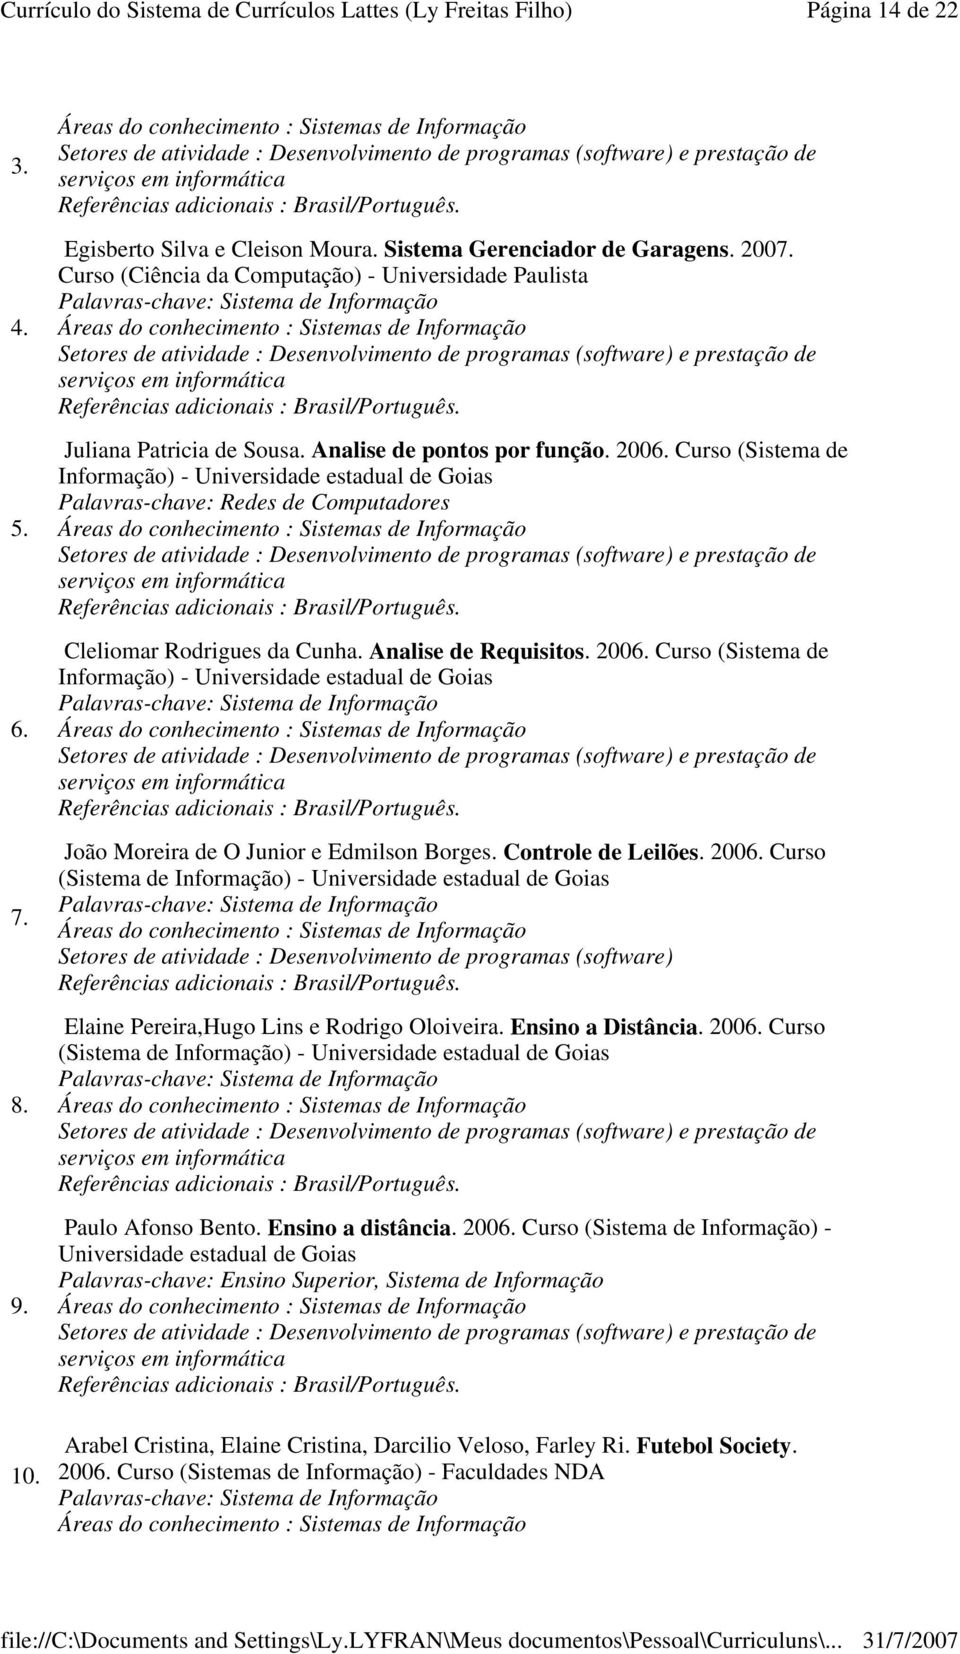 Curso (Sistema de Informação) - Universidade estadual de Goias Palavras-chave: Redes de Computadores e prestação de Cleliomar Rodrigues da Cunha. Analise de Requisitos. 2006.